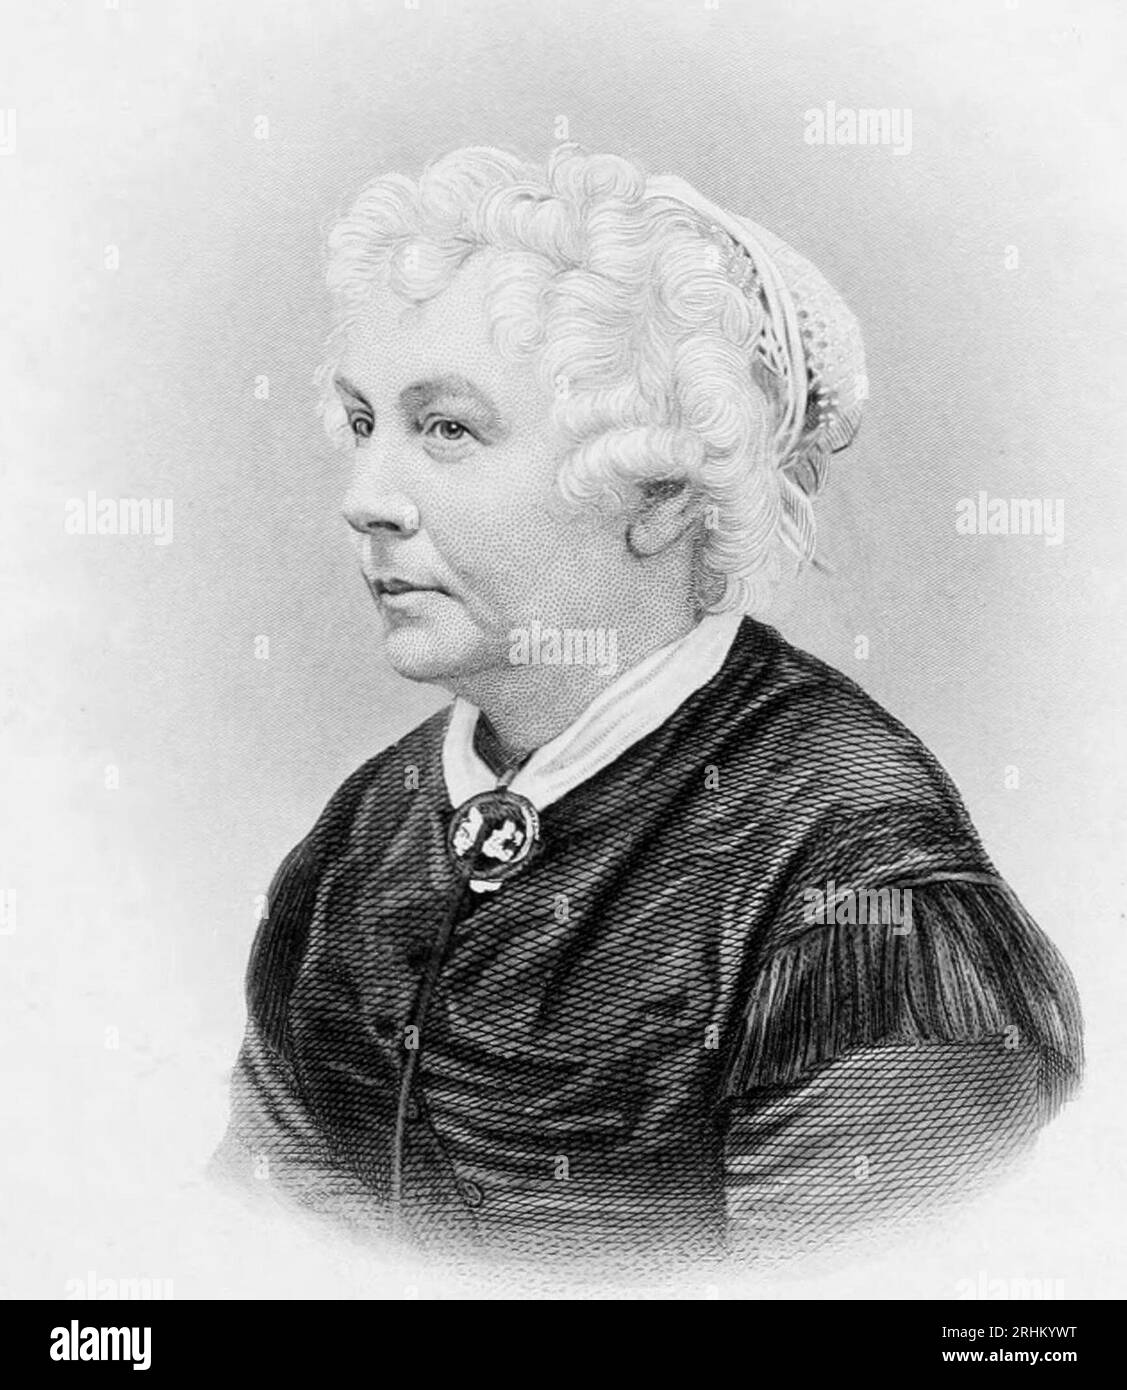 Elizabeth Cady Stanton (née Cady ; 12 novembre 1815 – 26 octobre 1902) est une écrivaine et militante américaine qui a été une leader du mouvement des droits des femmes aux États-Unis au milieu et à la fin du 19e siècle Banque D'Images